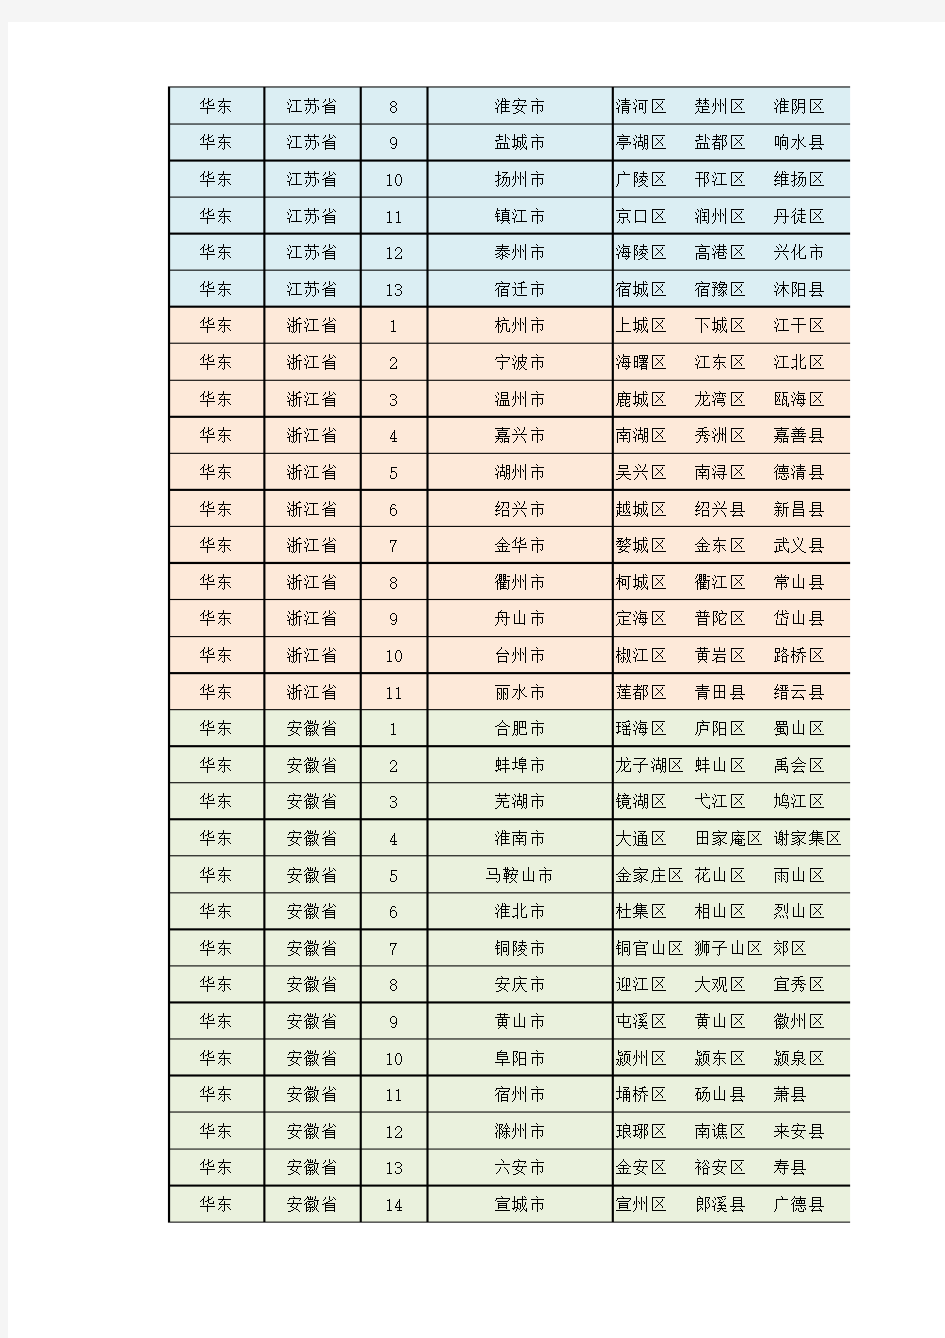 中国省市区统计表